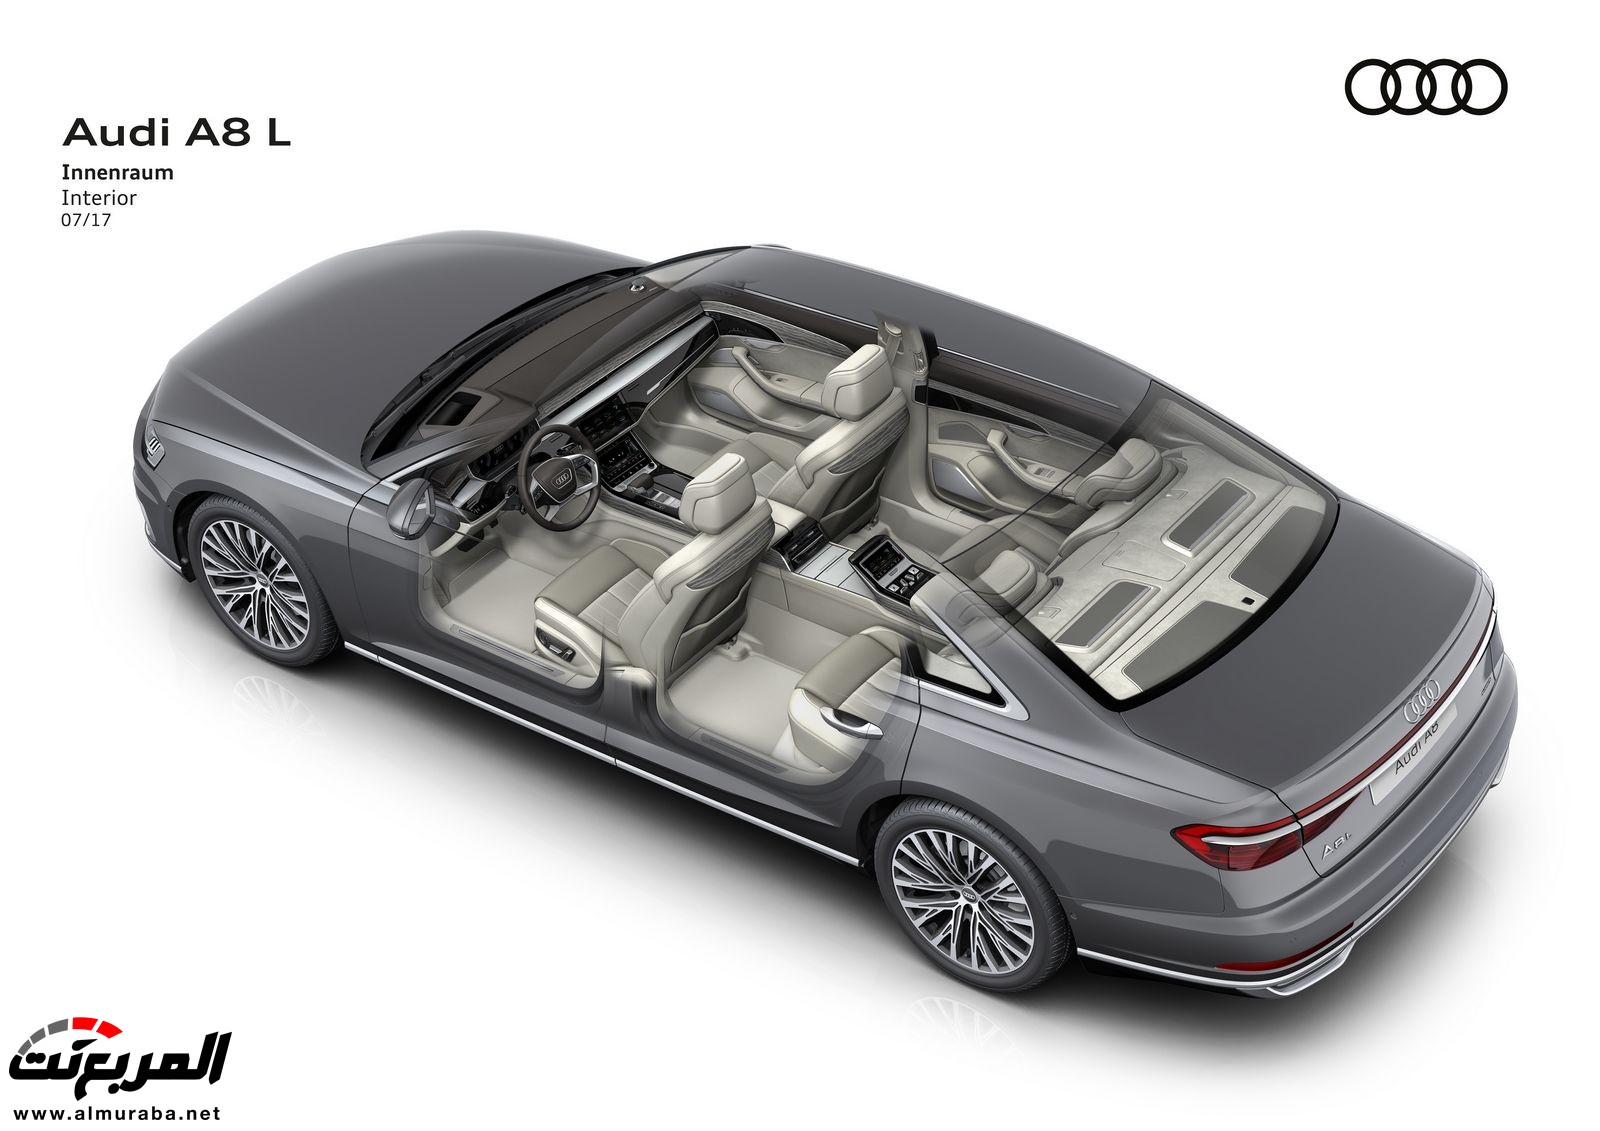 أودي A8 2018 الجديدة كلياً تكشف نفسها بتصميم وتقنيات متطورة "معلومات + 100 صورة" Audi A8 108